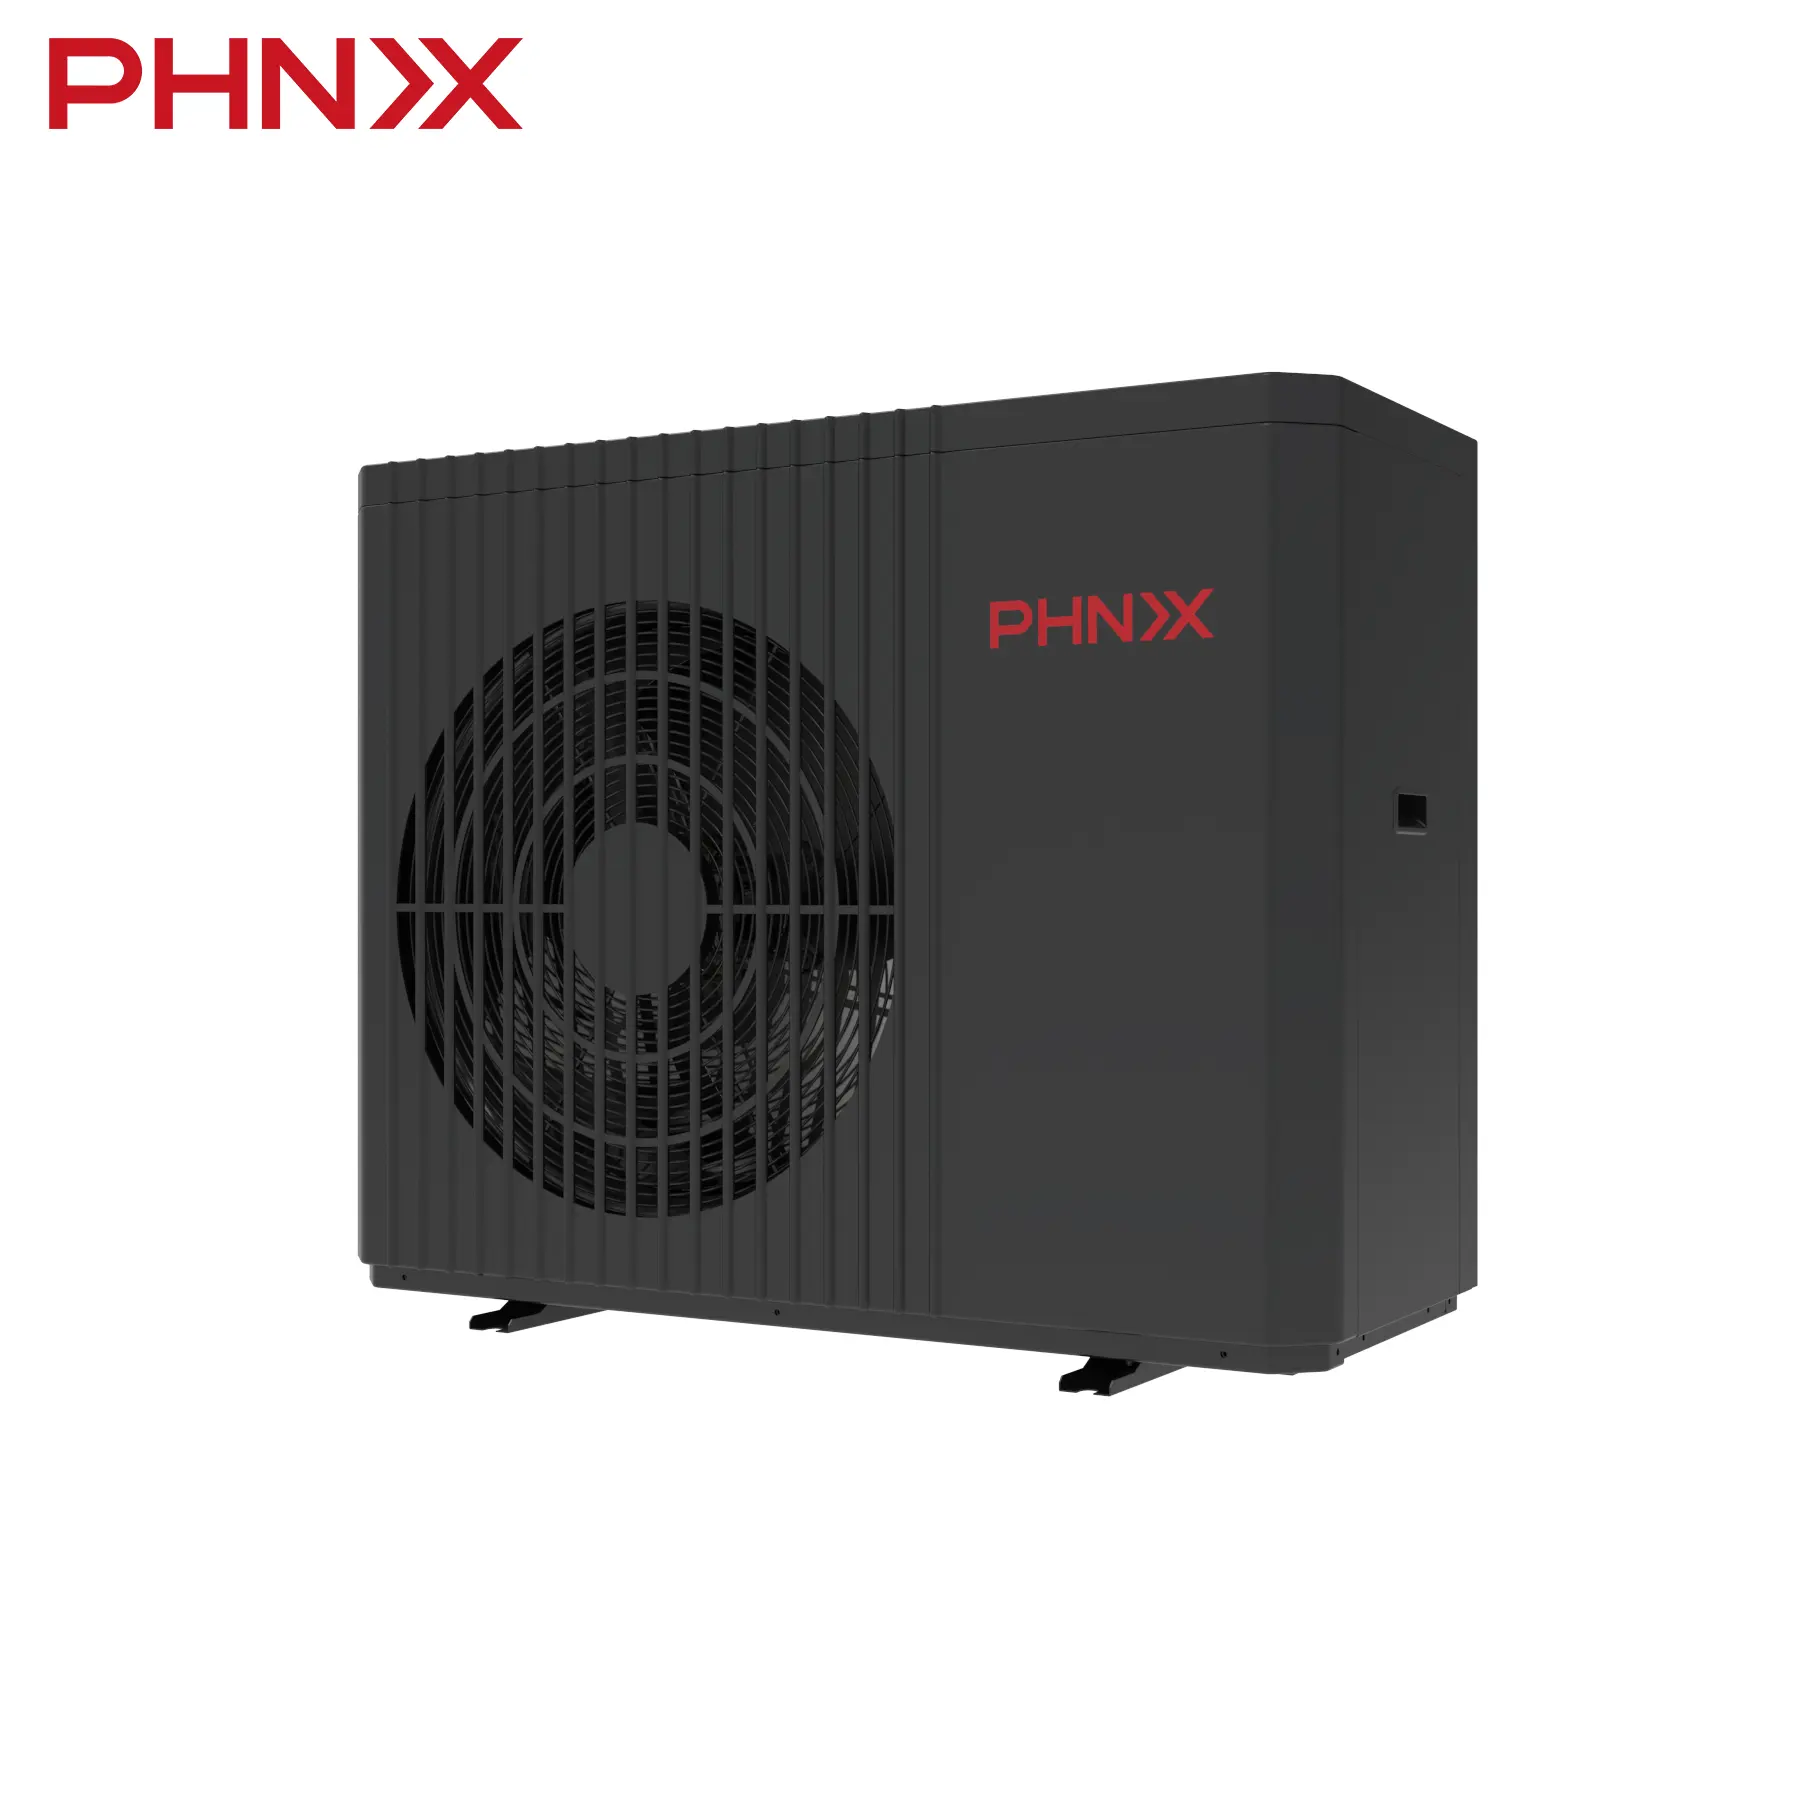 PHNIX R32 Eine hoch effiziente Luft-Wasser-Wärmepumpe Heizung Kühlung Warmwasser-Wärmepumpe mit vollem DC-Wechsel richter